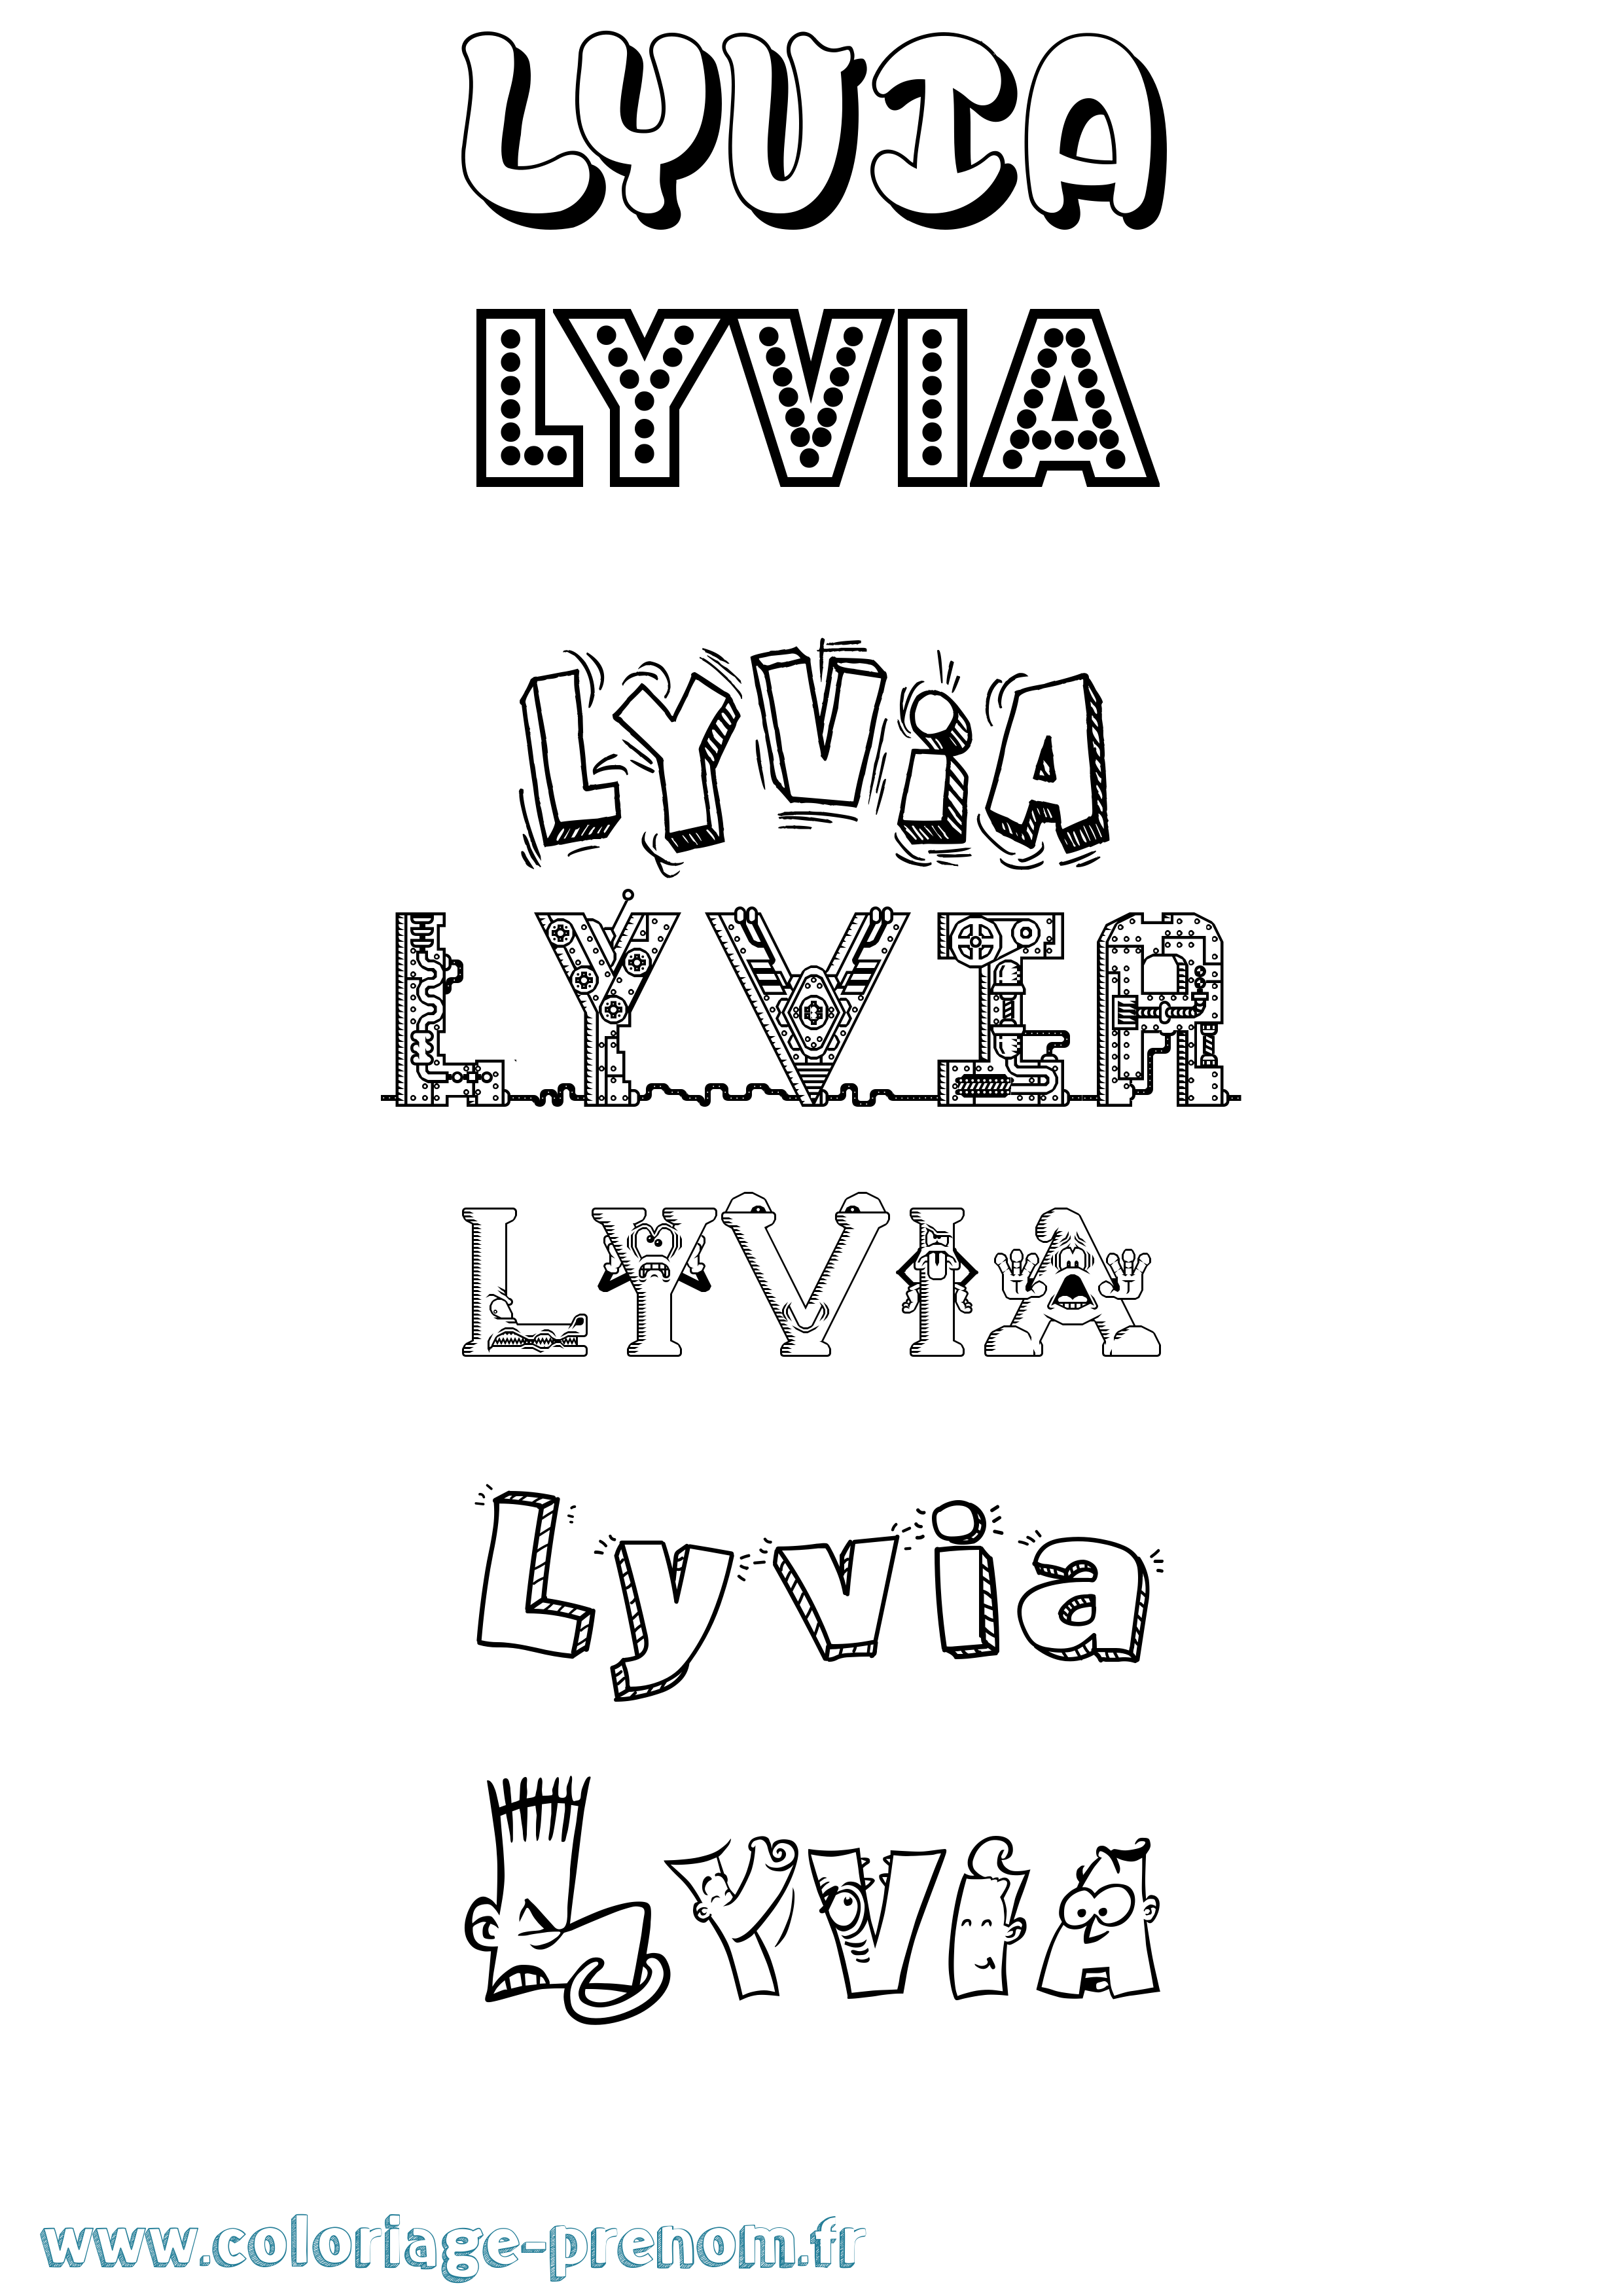 Coloriage prénom Lyvia Fun